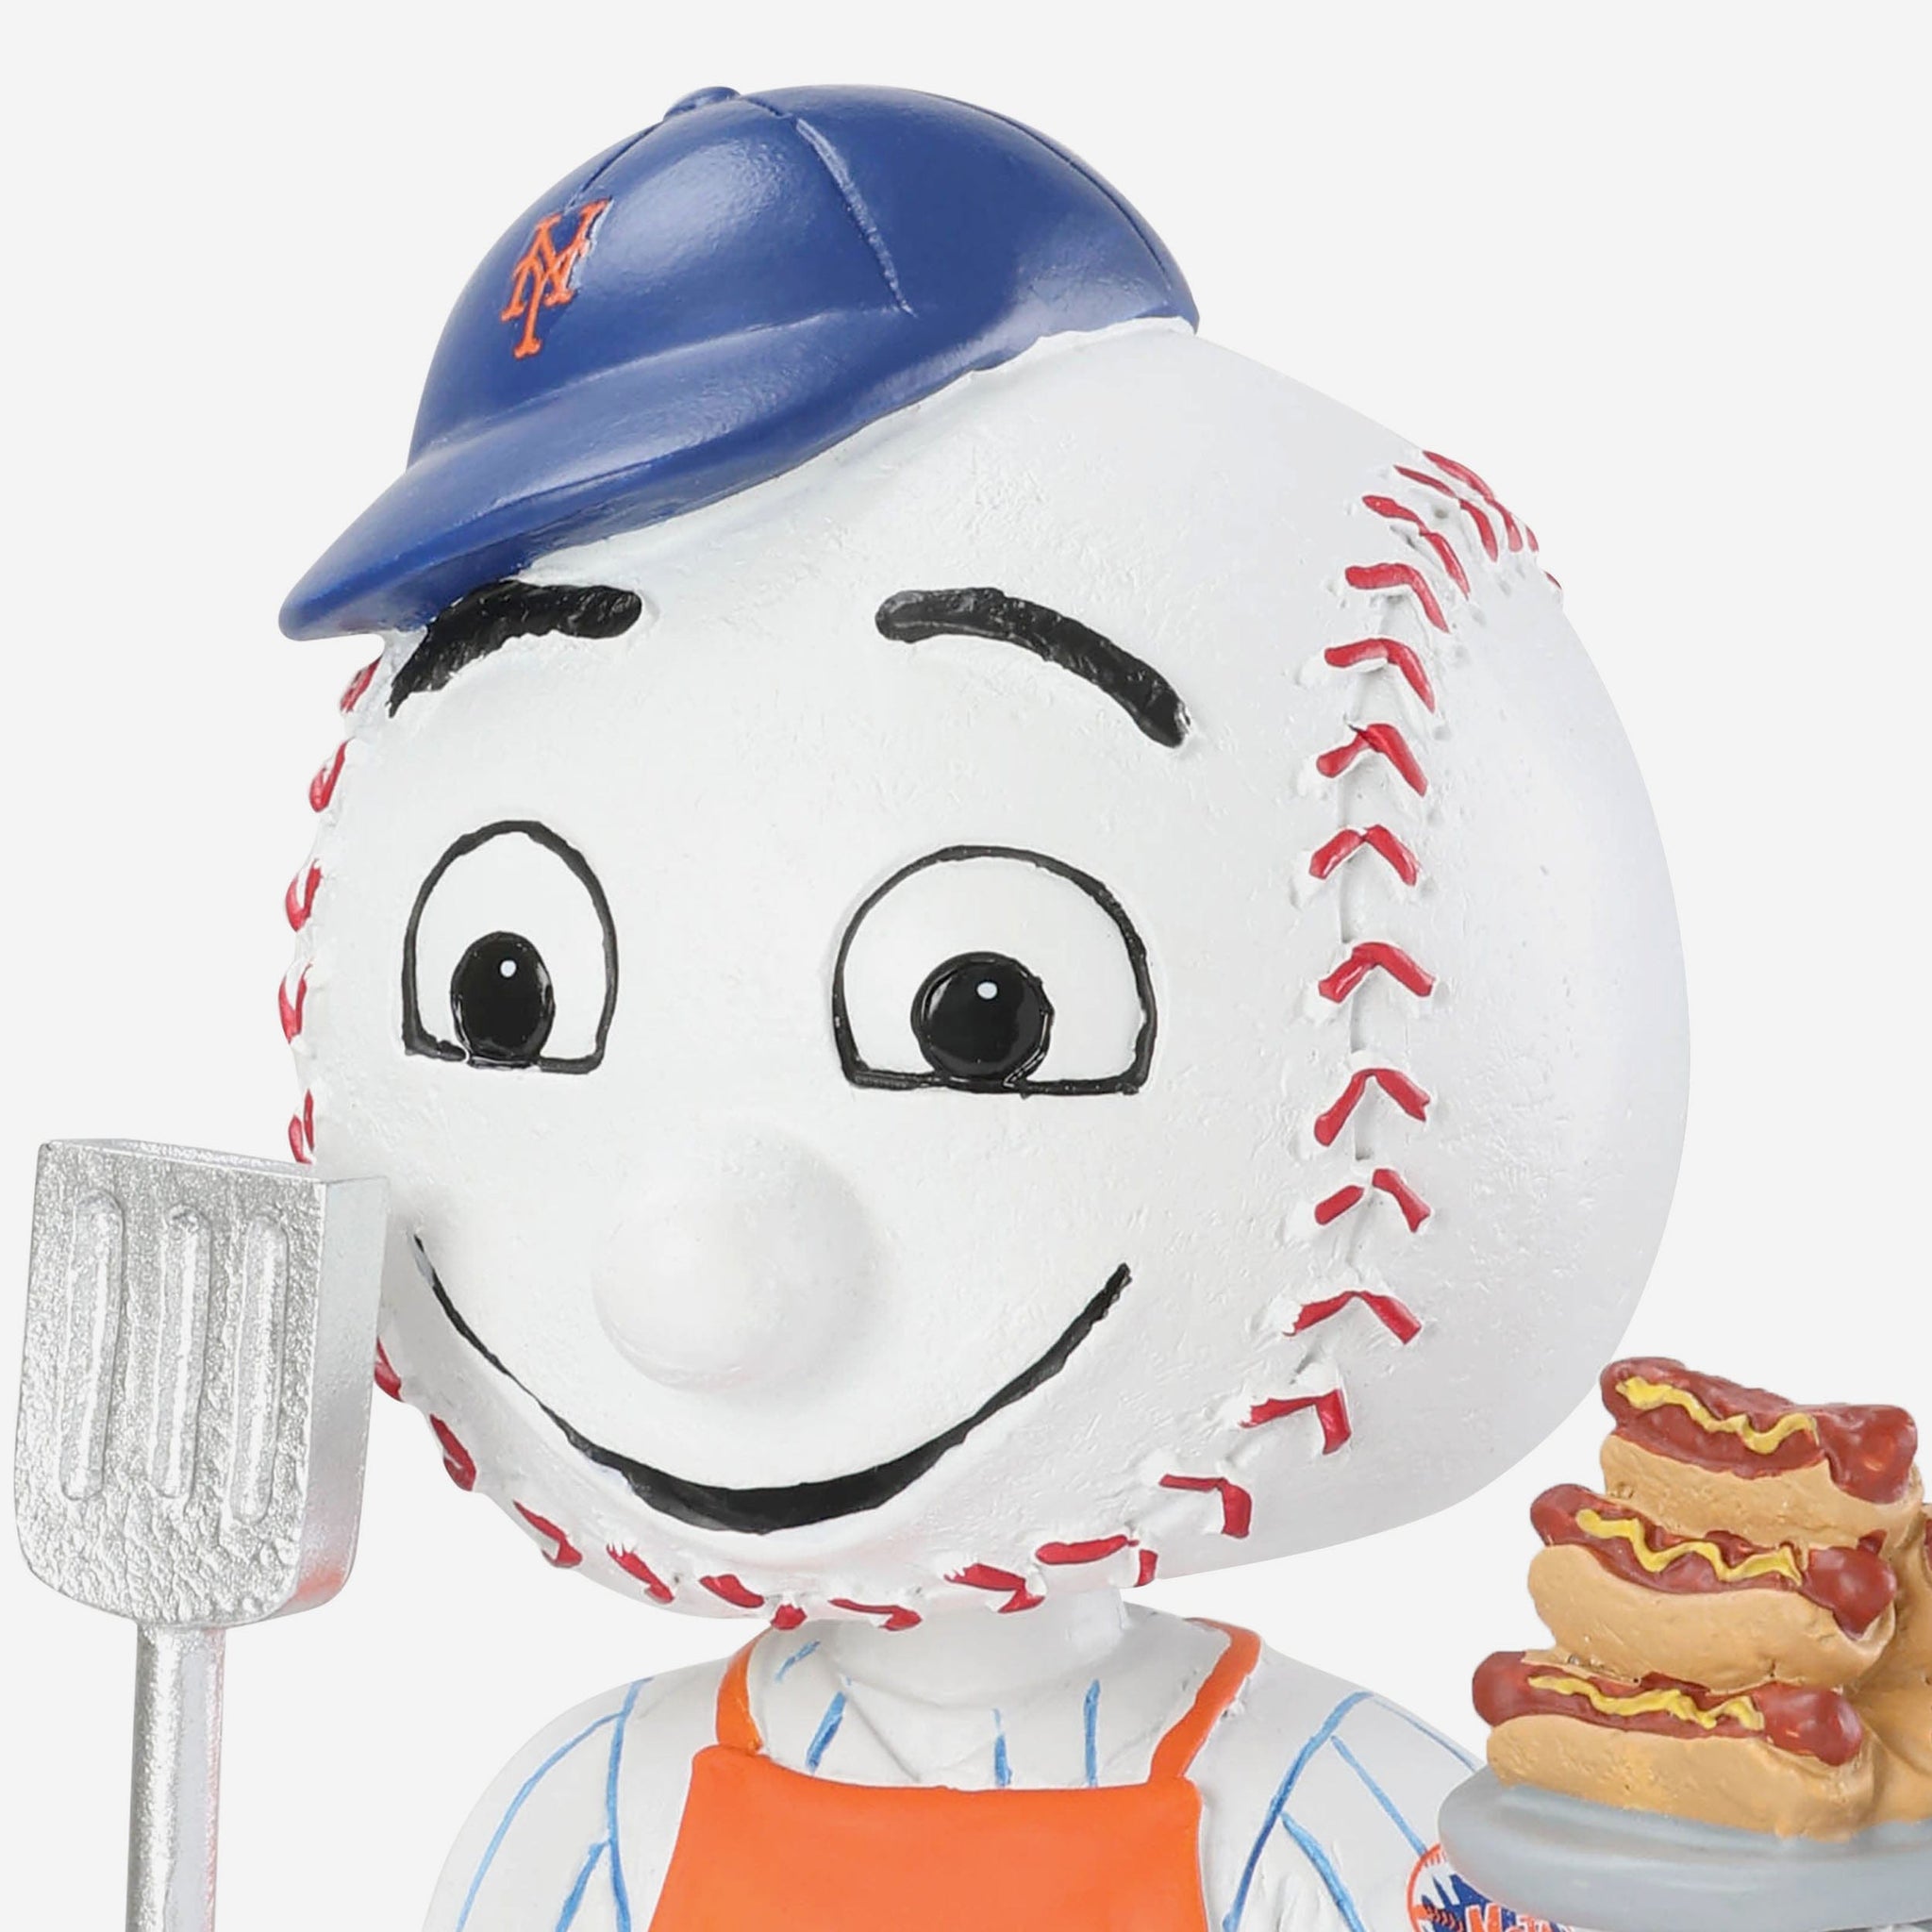 Mr Met New York Mets Memorial Day Mascot Bobblehead FOCO